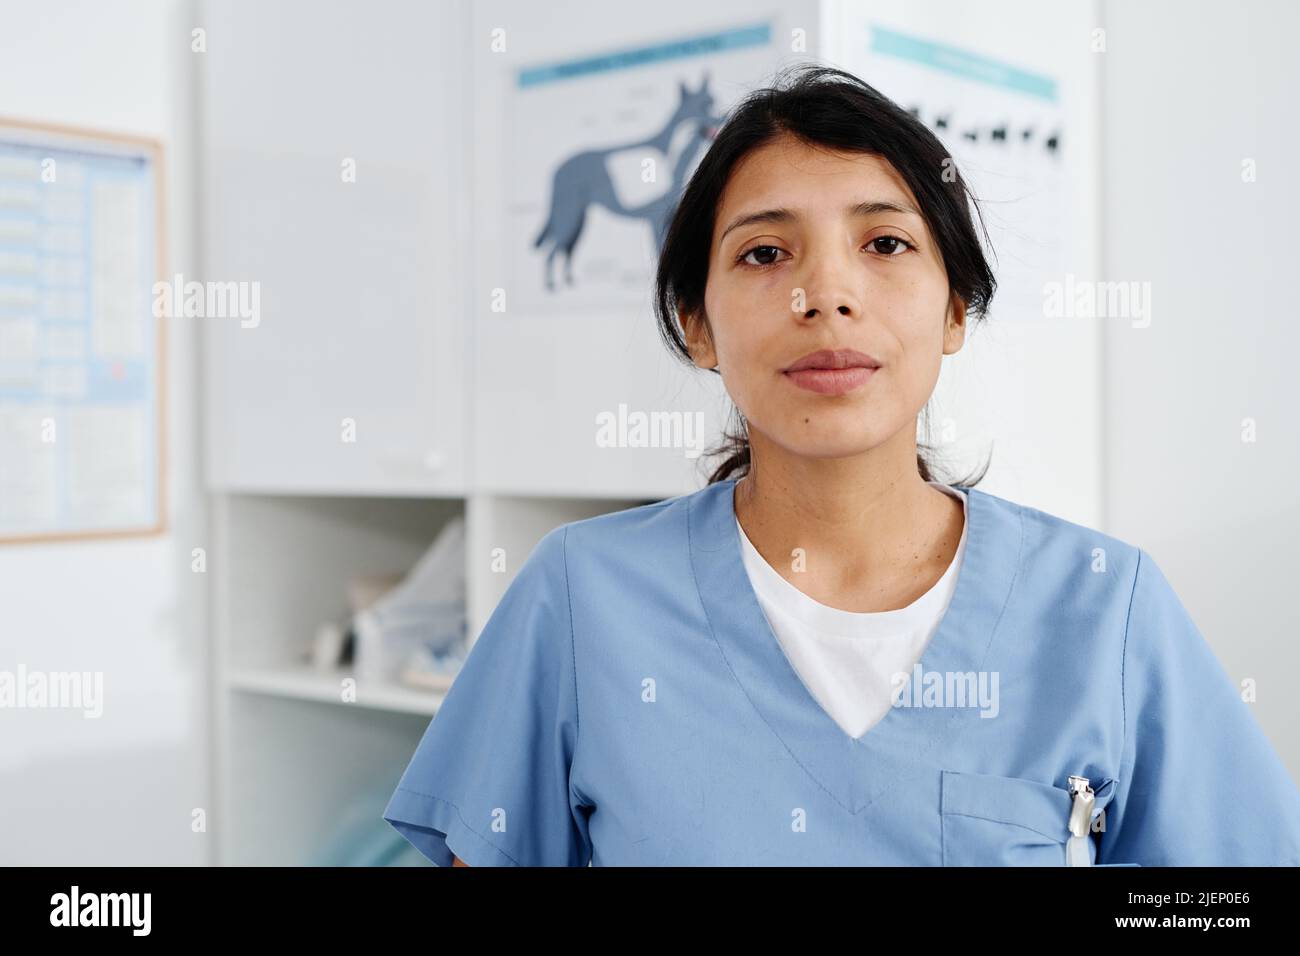 Mittelgroßes Nahaufnahme-Porträt einer jungen erwachsenen hispanischen Frau, die in der Tierarztklinik arbeitet und im Untersuchungsraum steht und die Kamera anschaut Stockfoto